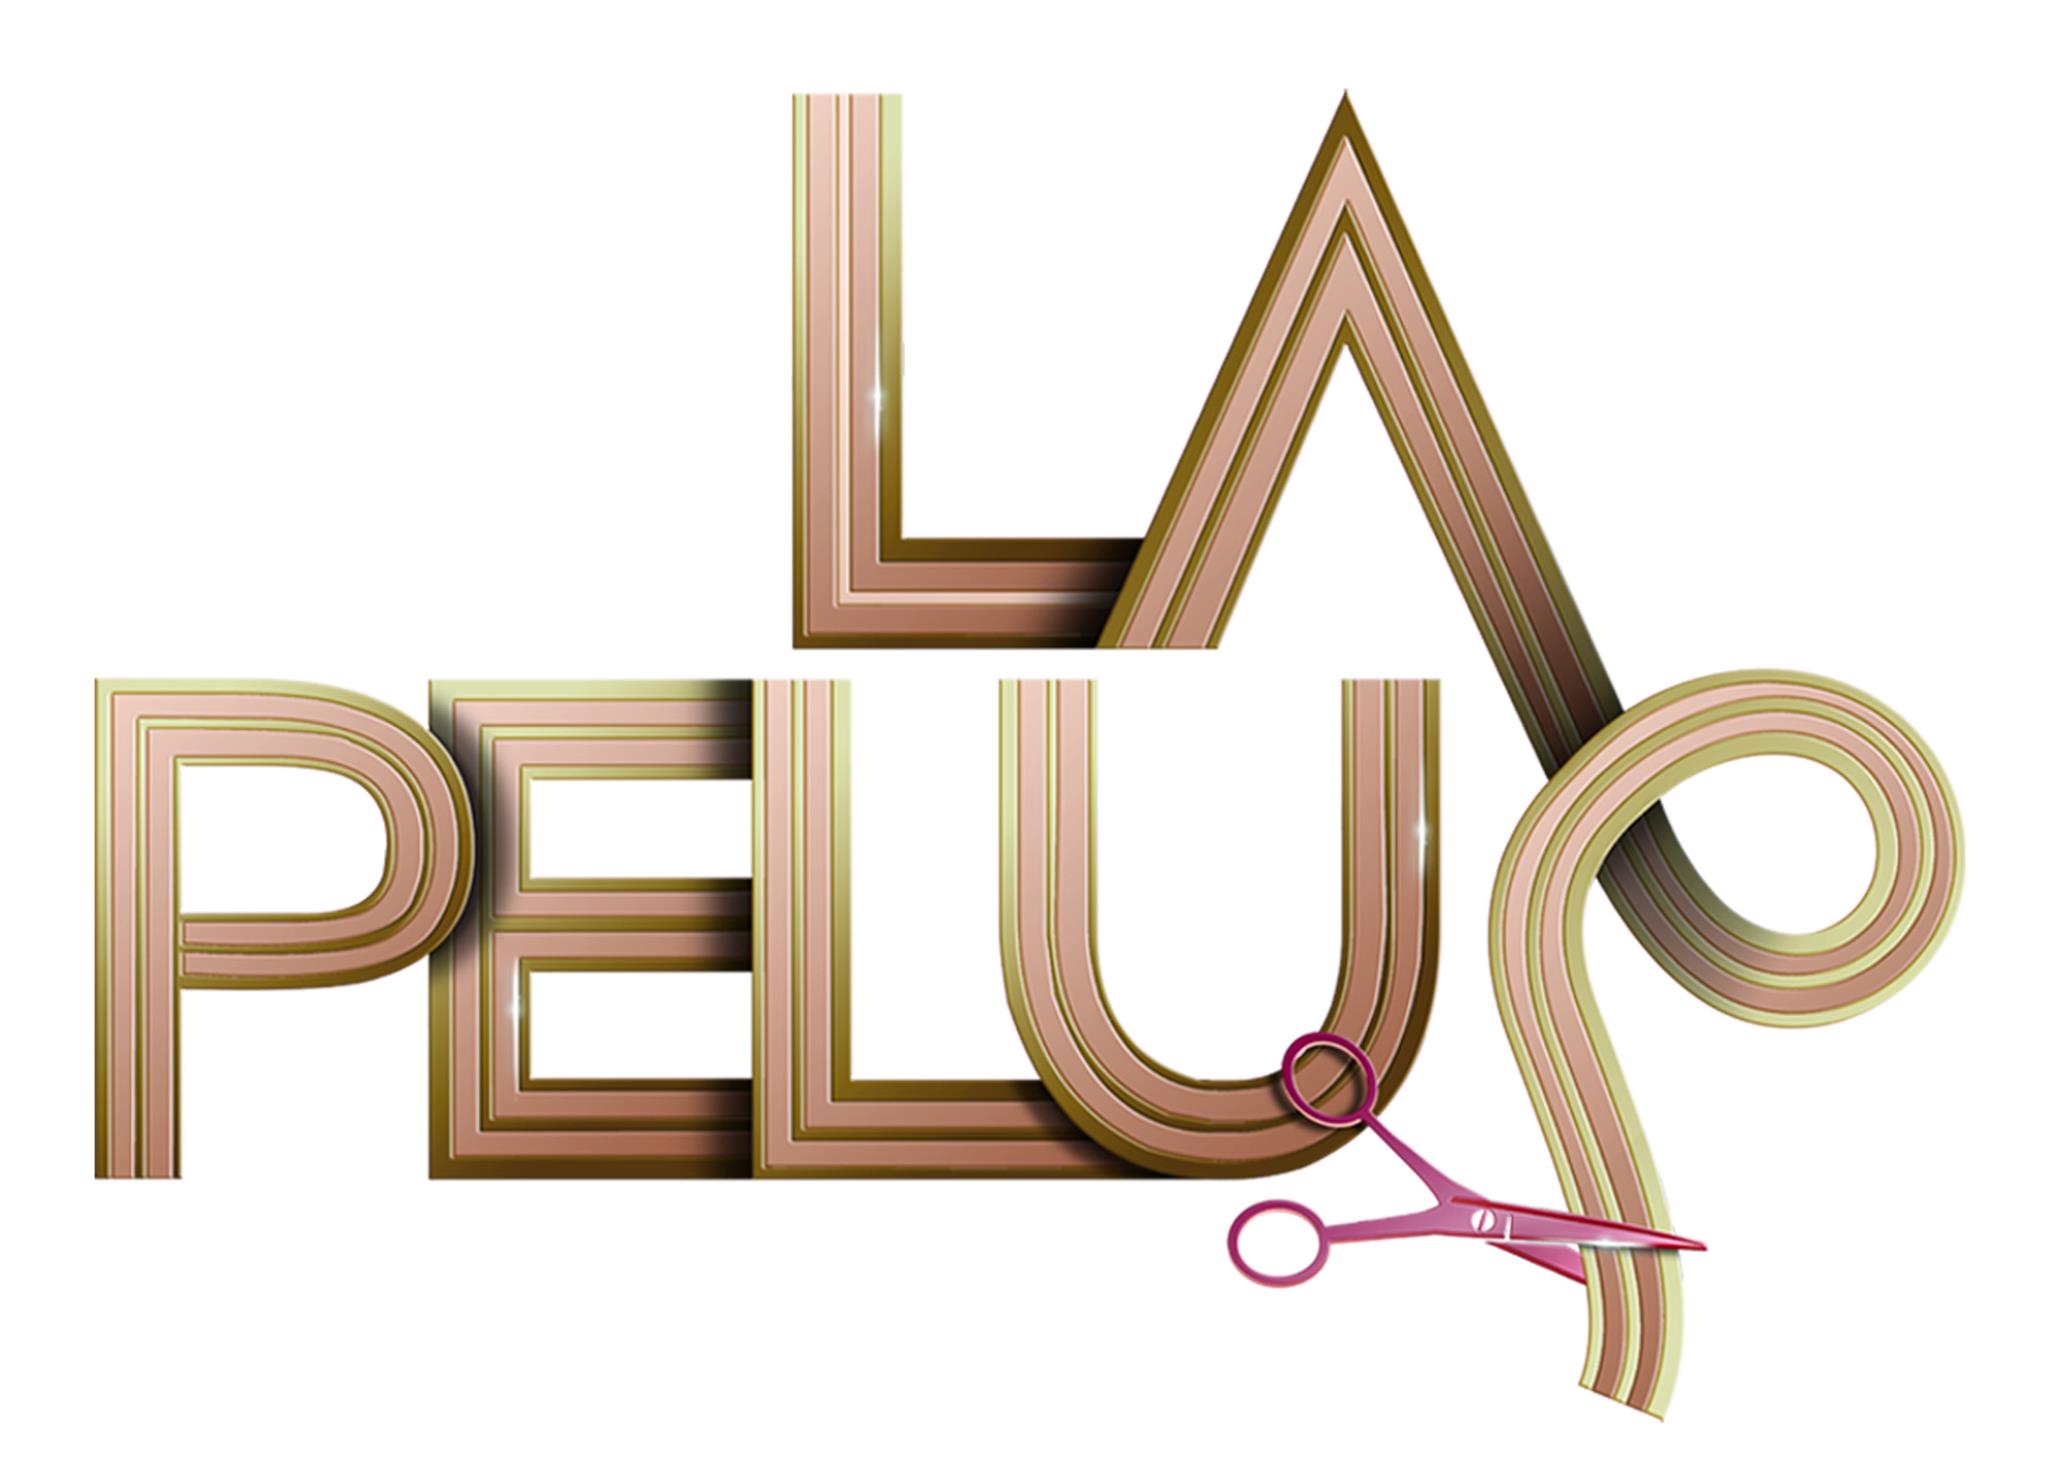 La Pelu (2012) постер